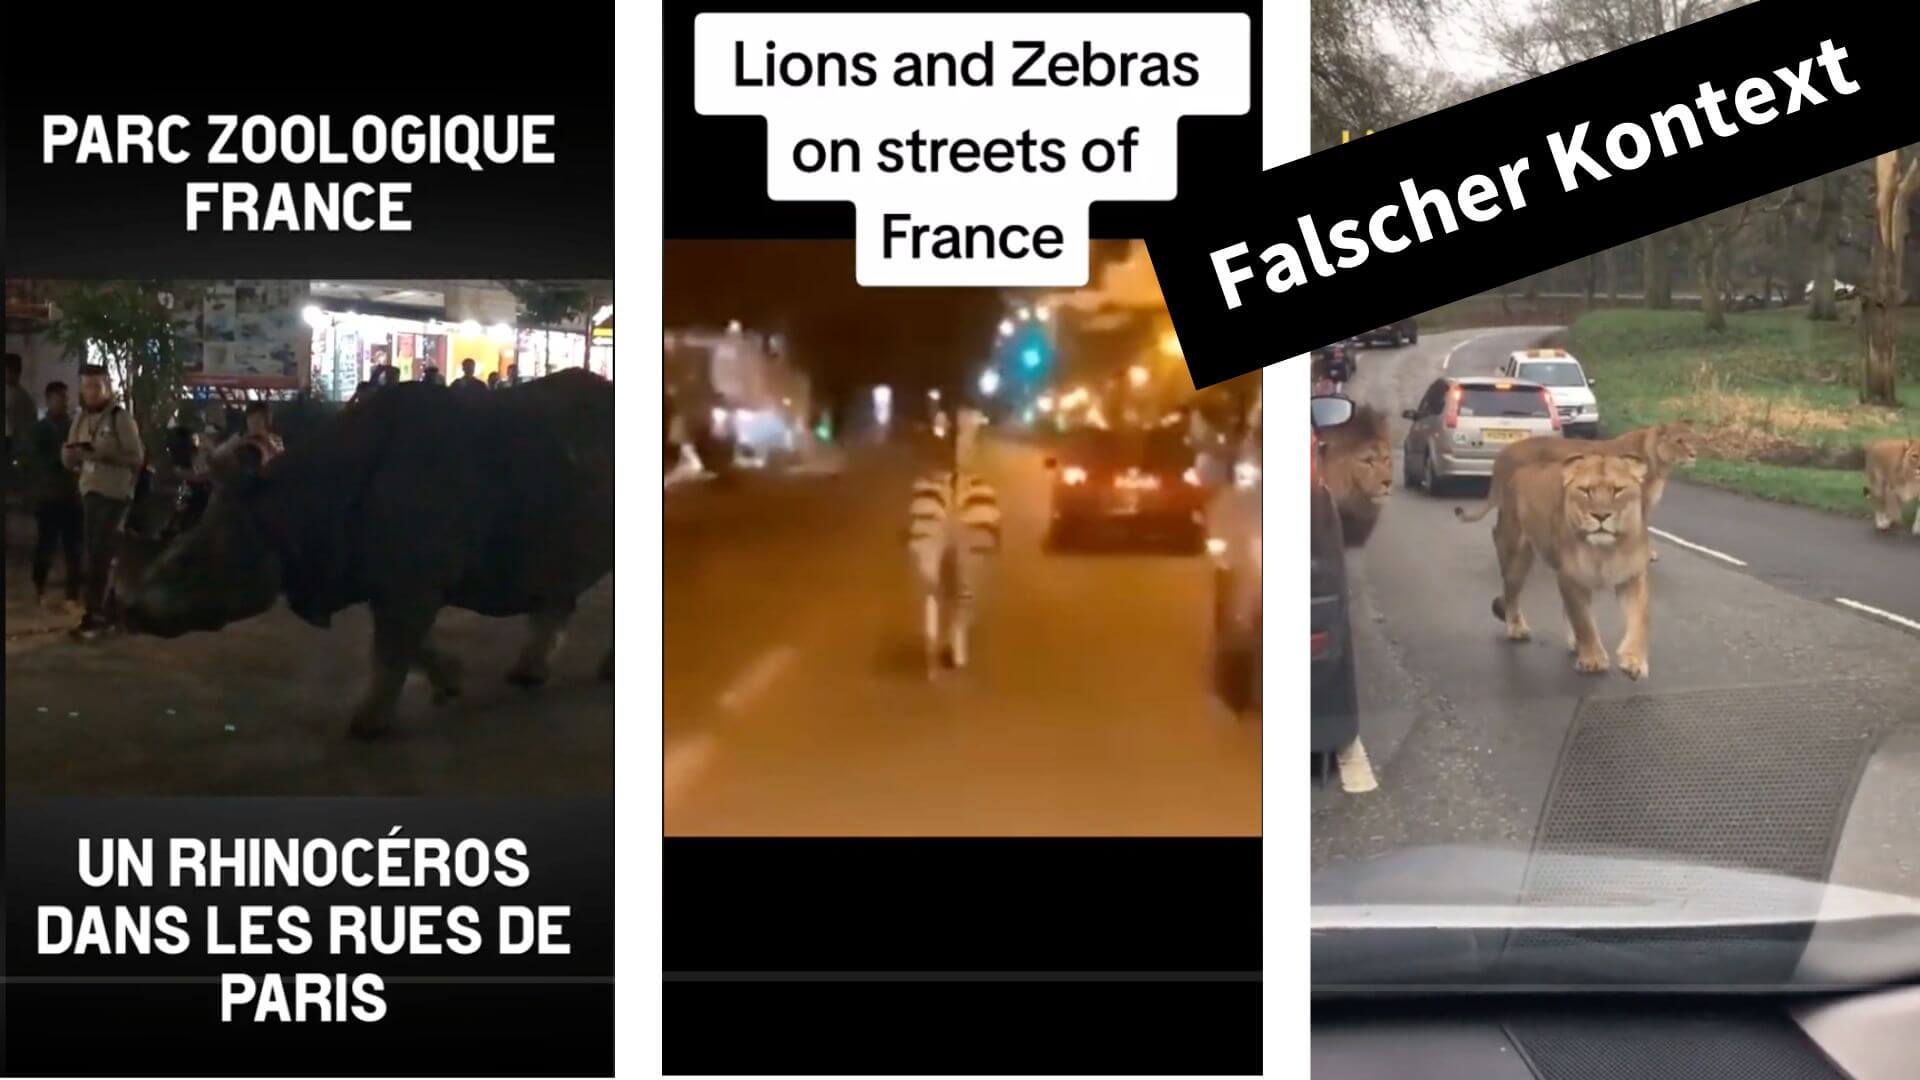 Diese Tiktok-Videos stehen nicht in Zusammenhang mit den Ausschreitungen in Frankreich.